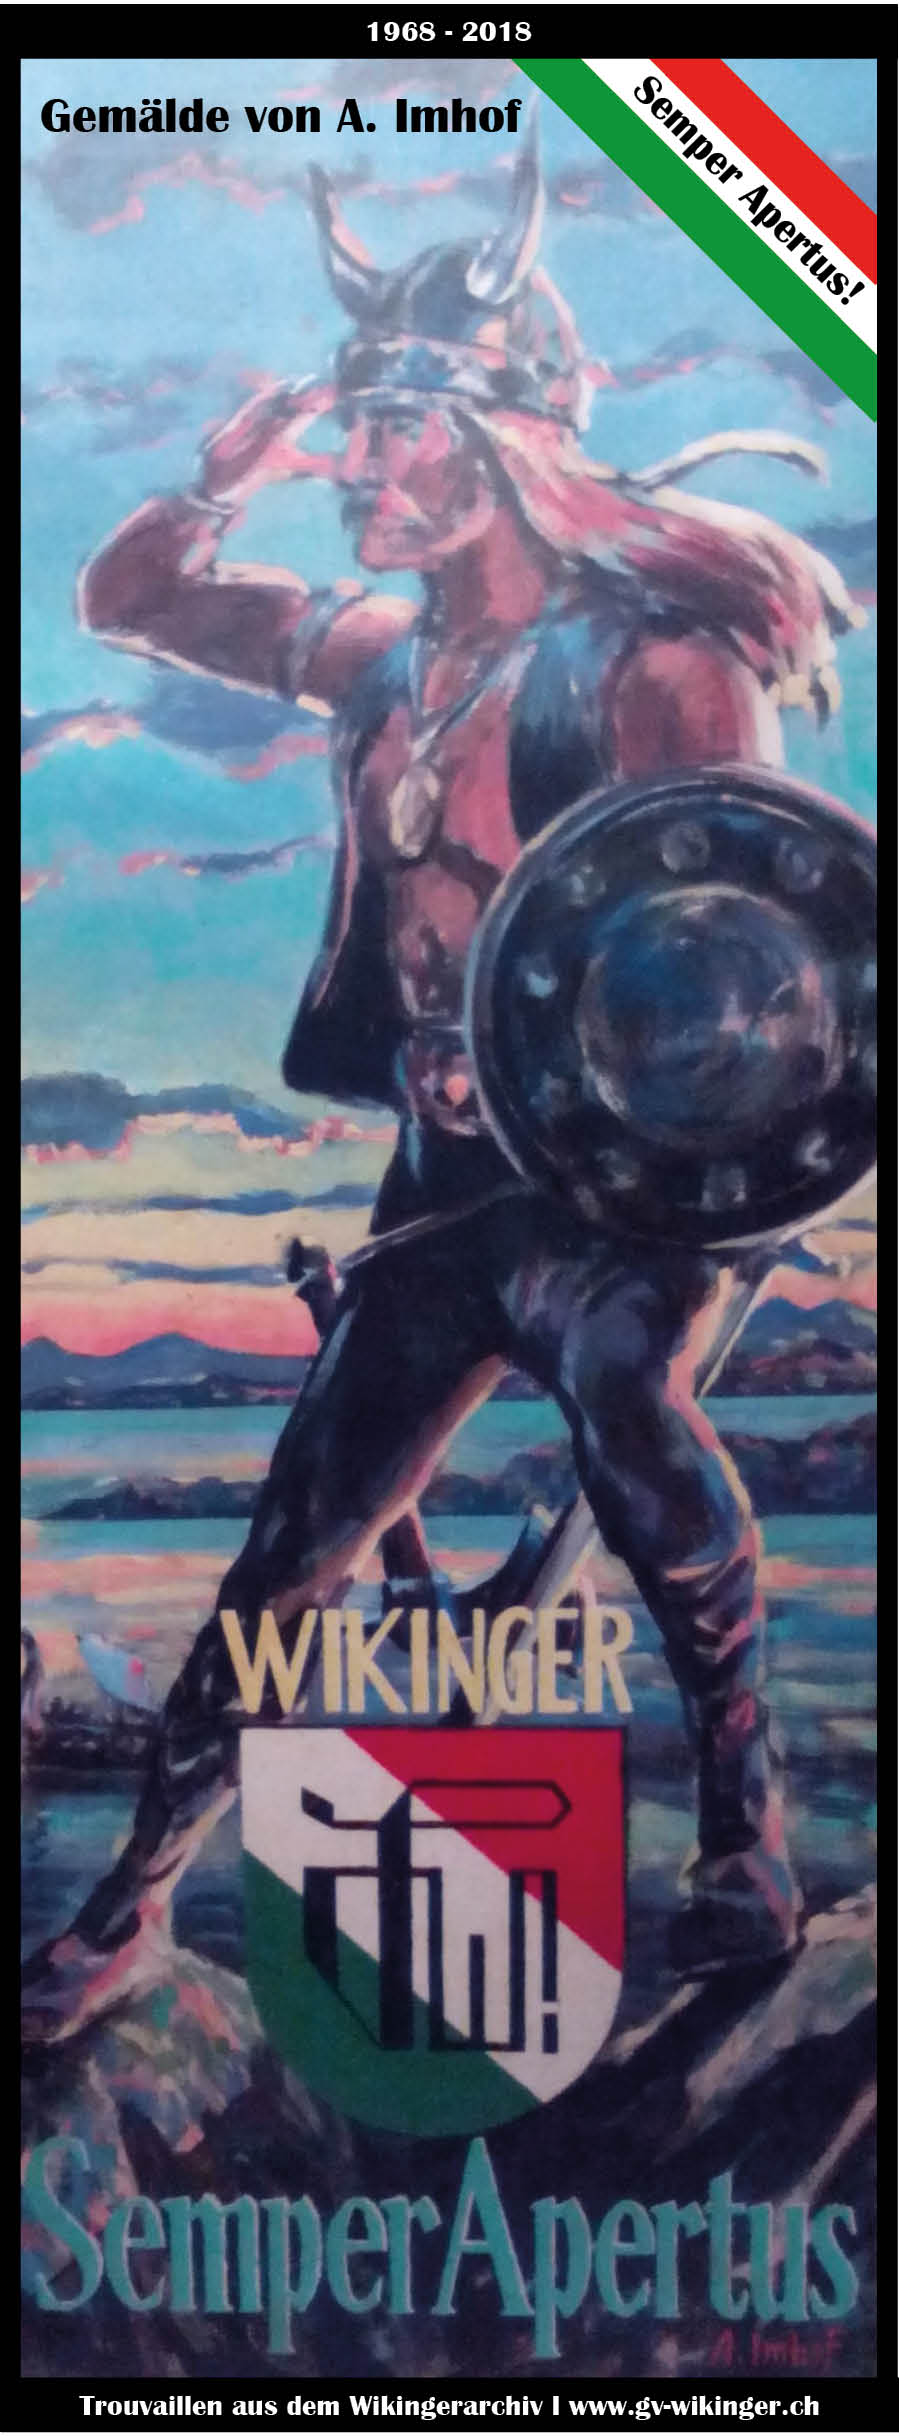 Wikinger_1968-2018_gemalter-Wikinger.jpg